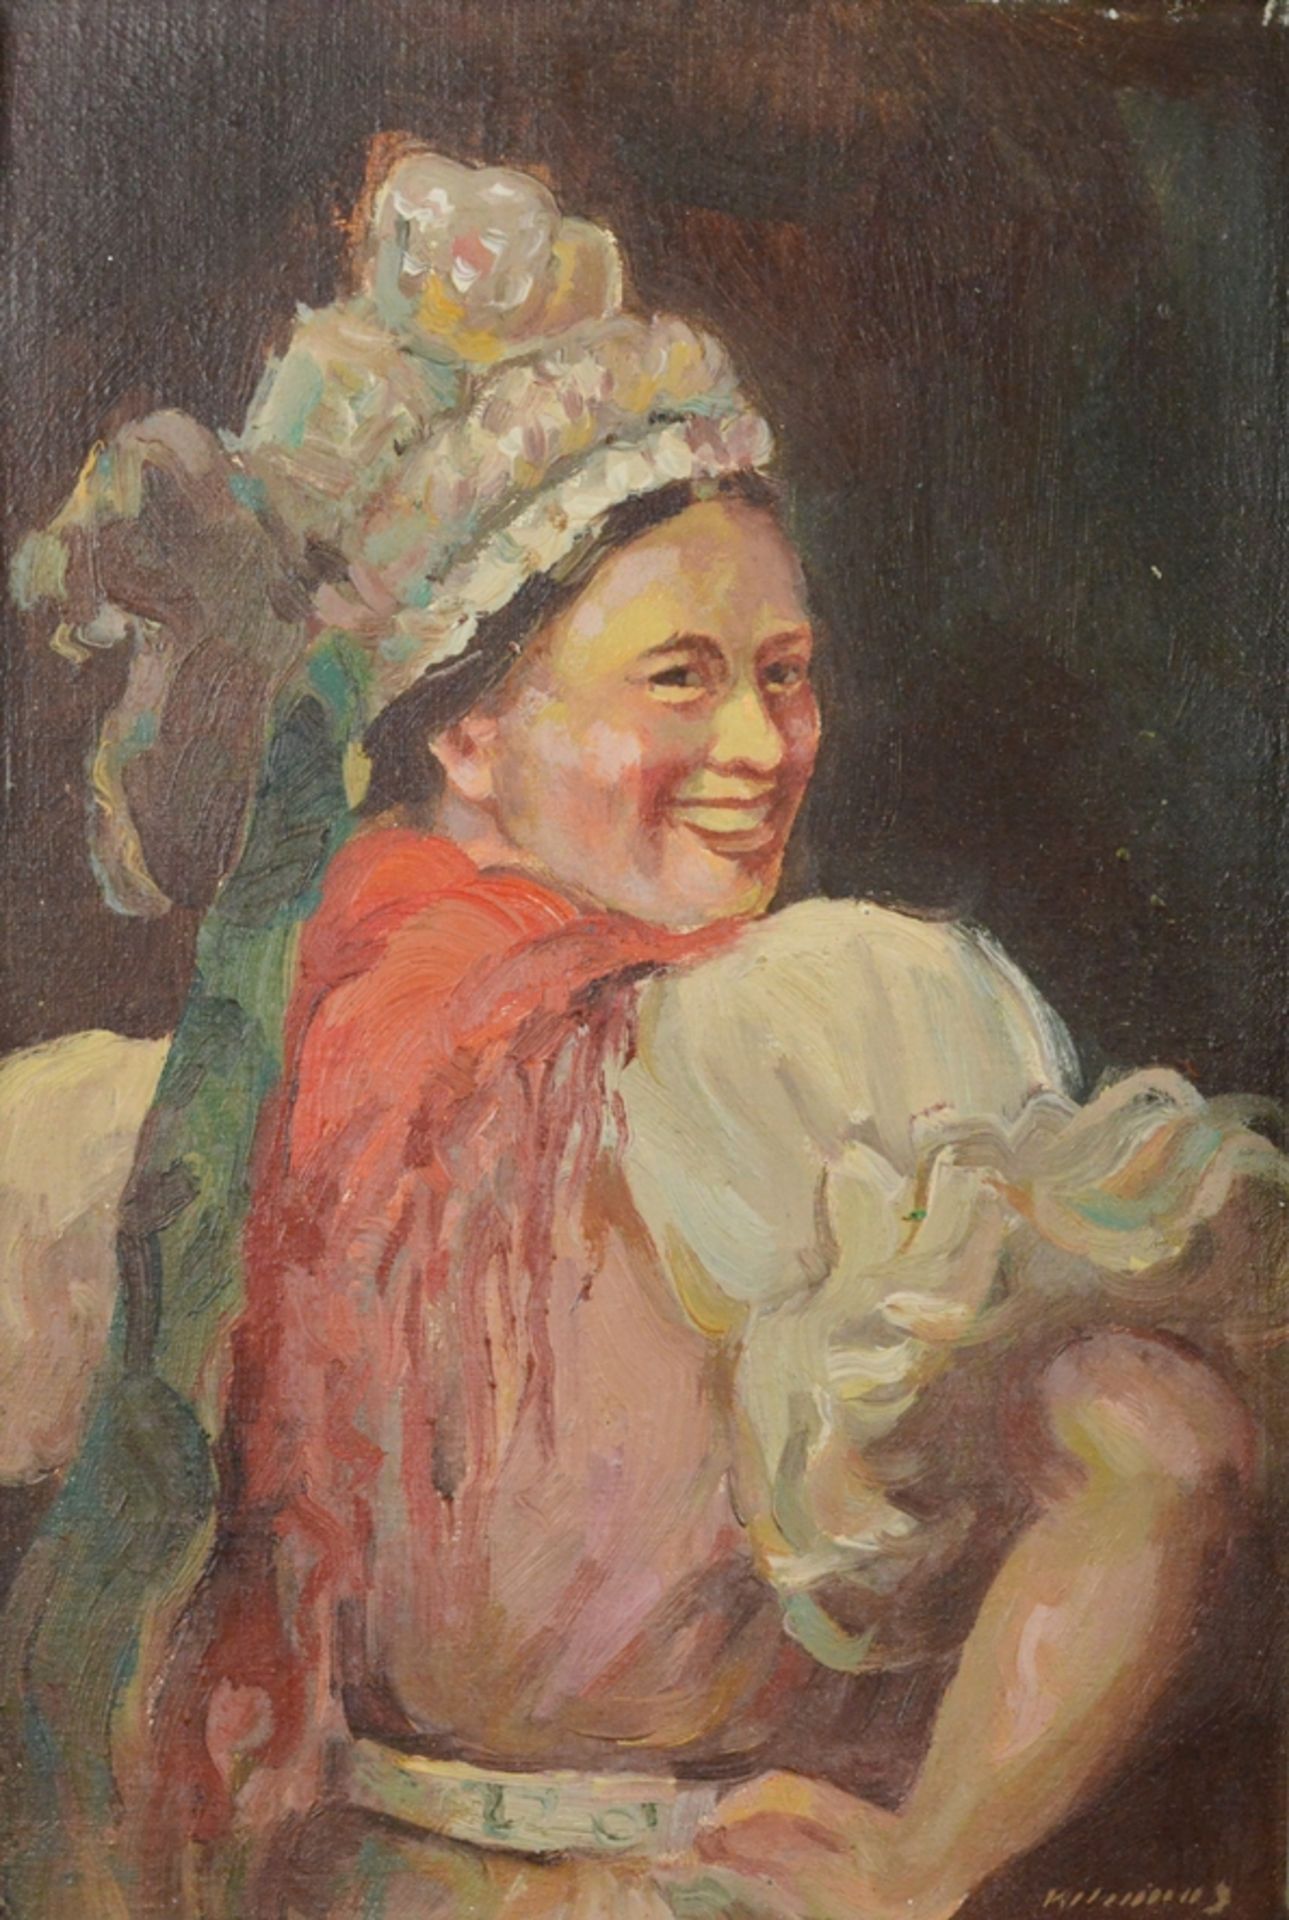 Künstler des 19./20. Jahrhunderts, "Dame in Tracht", keck über die Schulter blickend, rechts unten 